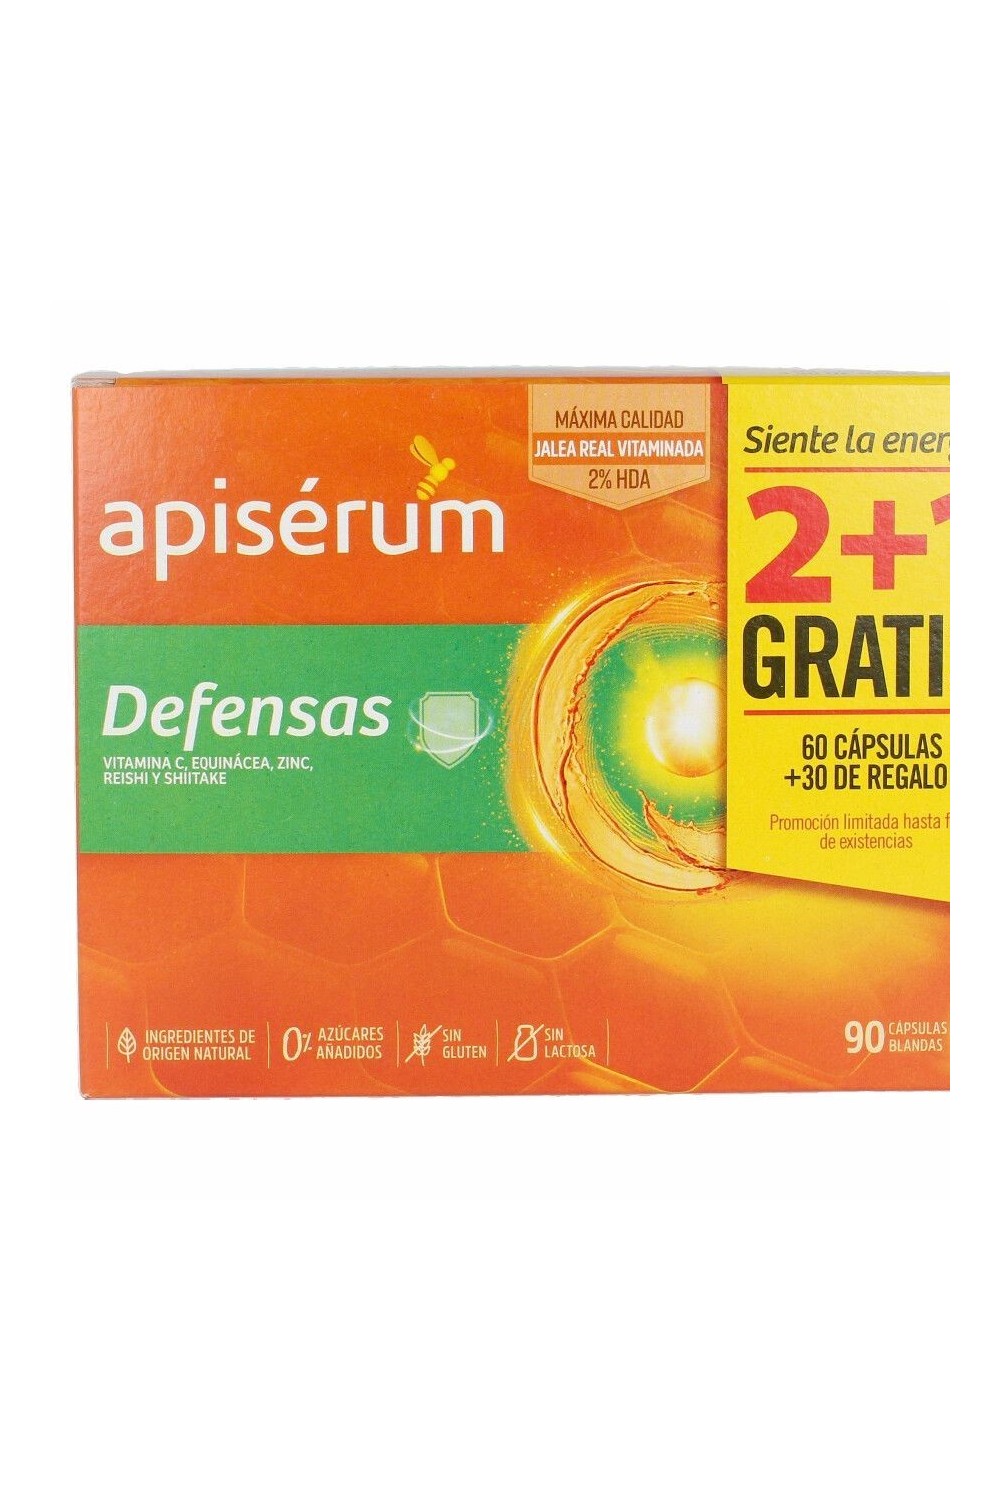 APISÉRUM - Apisérum Defenses Pack 3 months 90 capsules